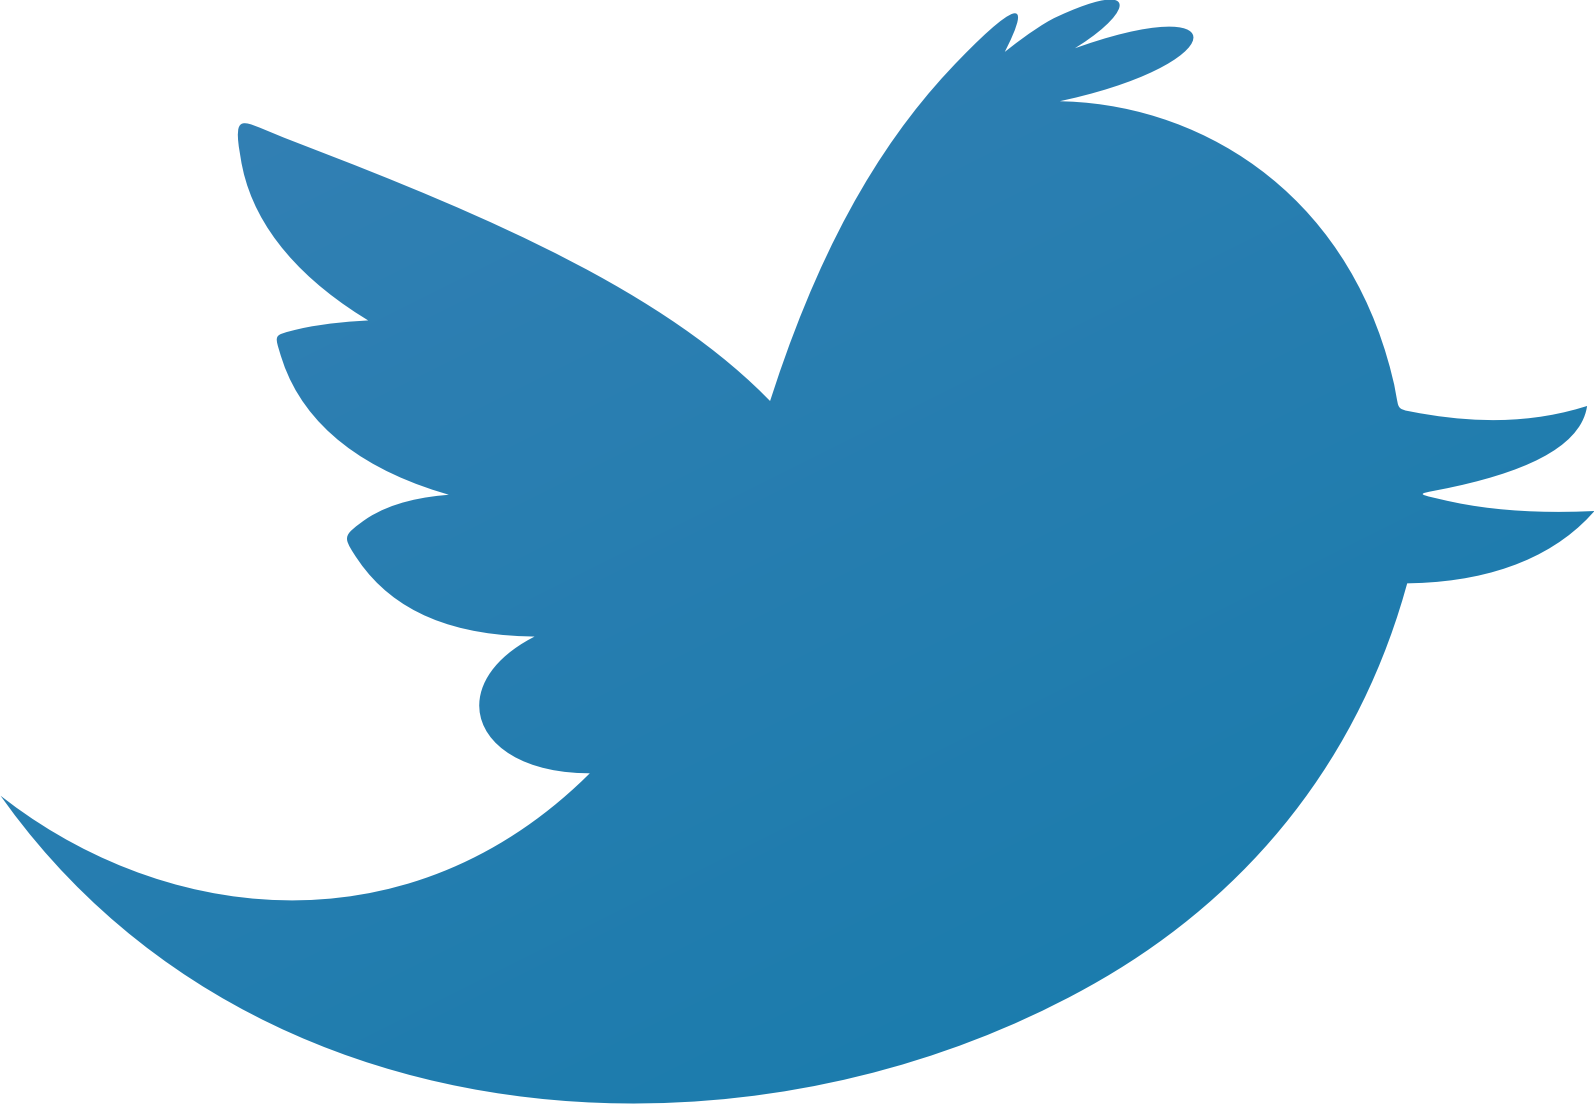 Twitter_bird_logo.png